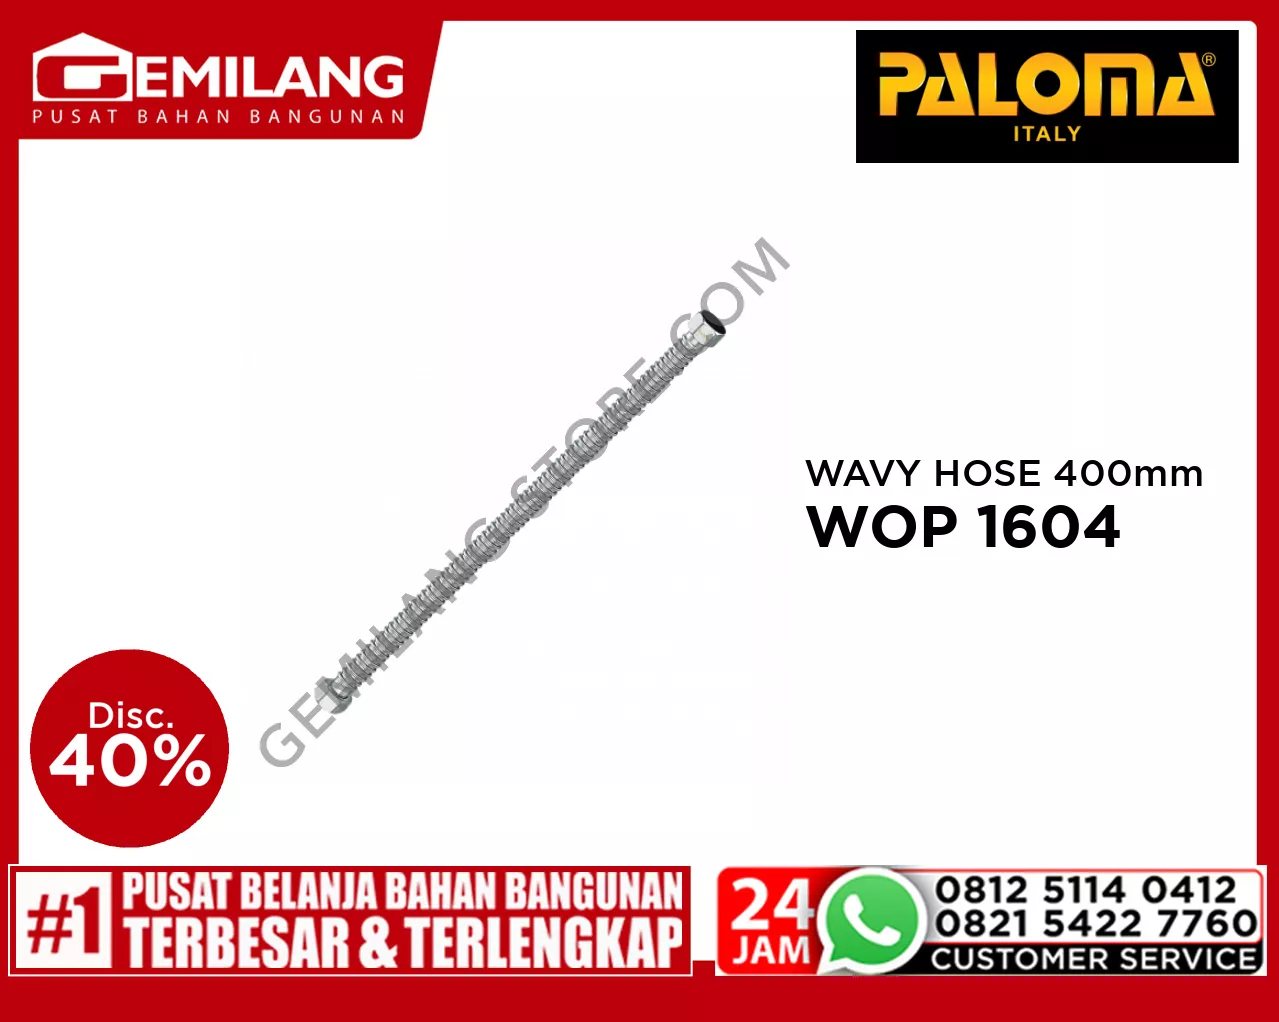 PALOMA WAVY HOSE G 1/2 x G 1/2 CHROME 400mm WOP 1604